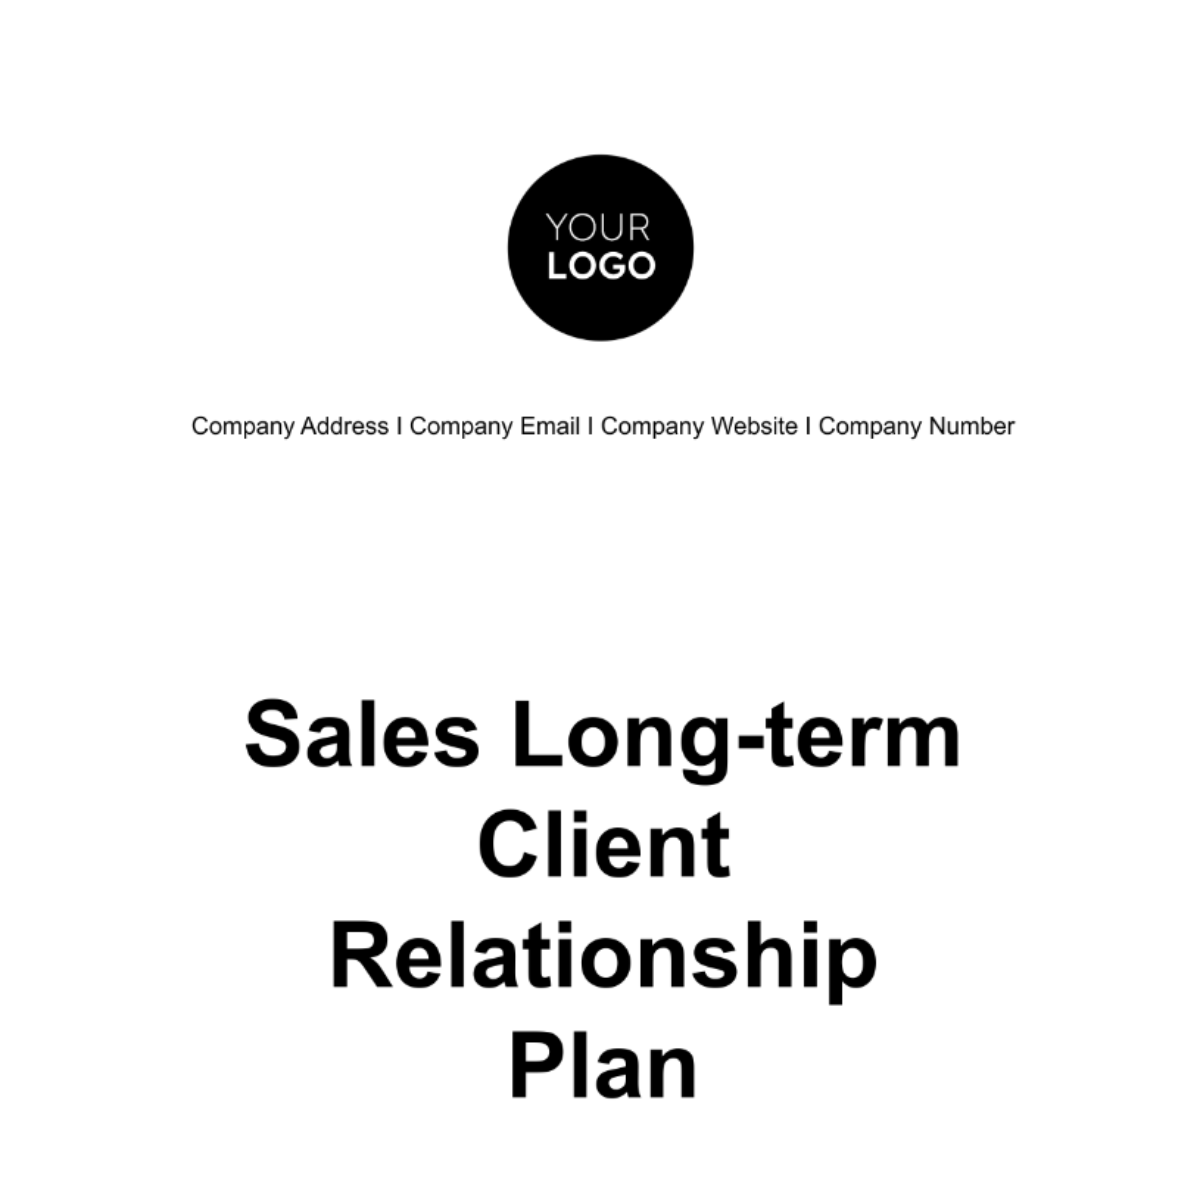 Sales Long-term Client Relationship Plan Template